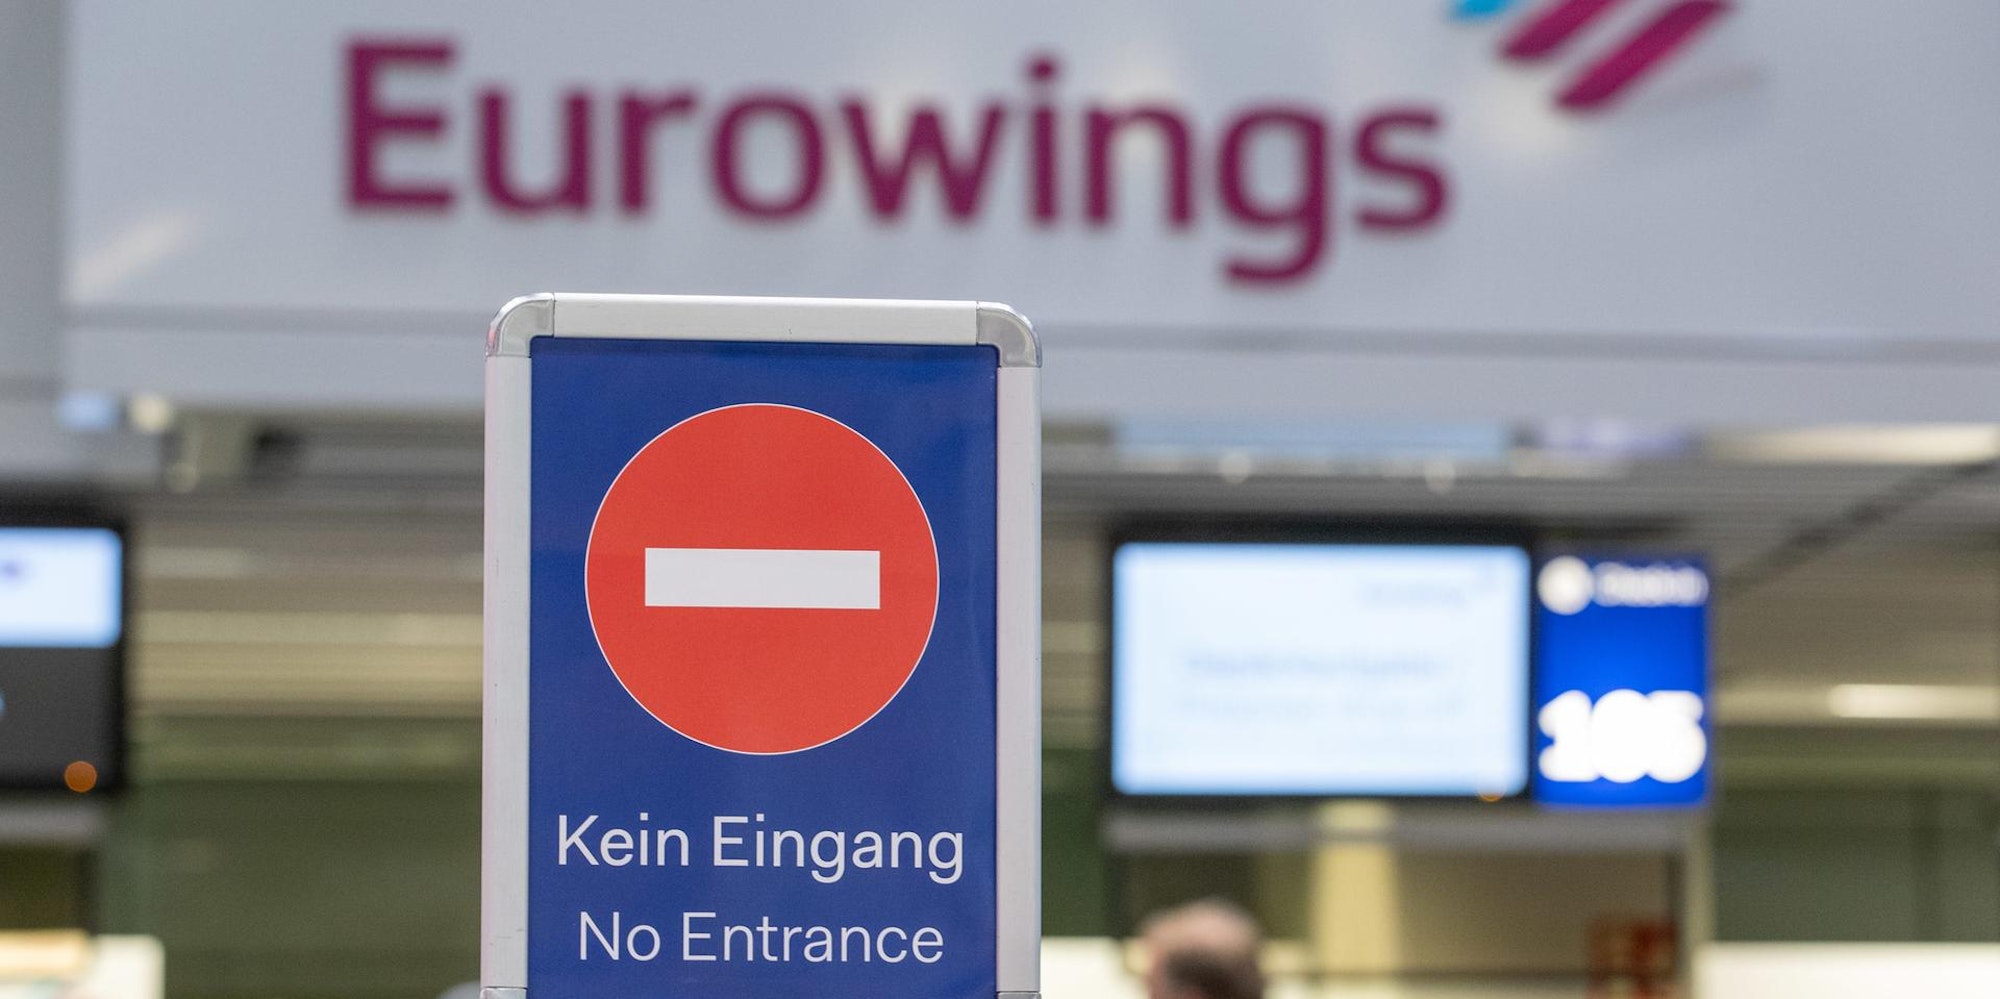 Flughafen_Due_Eurowings